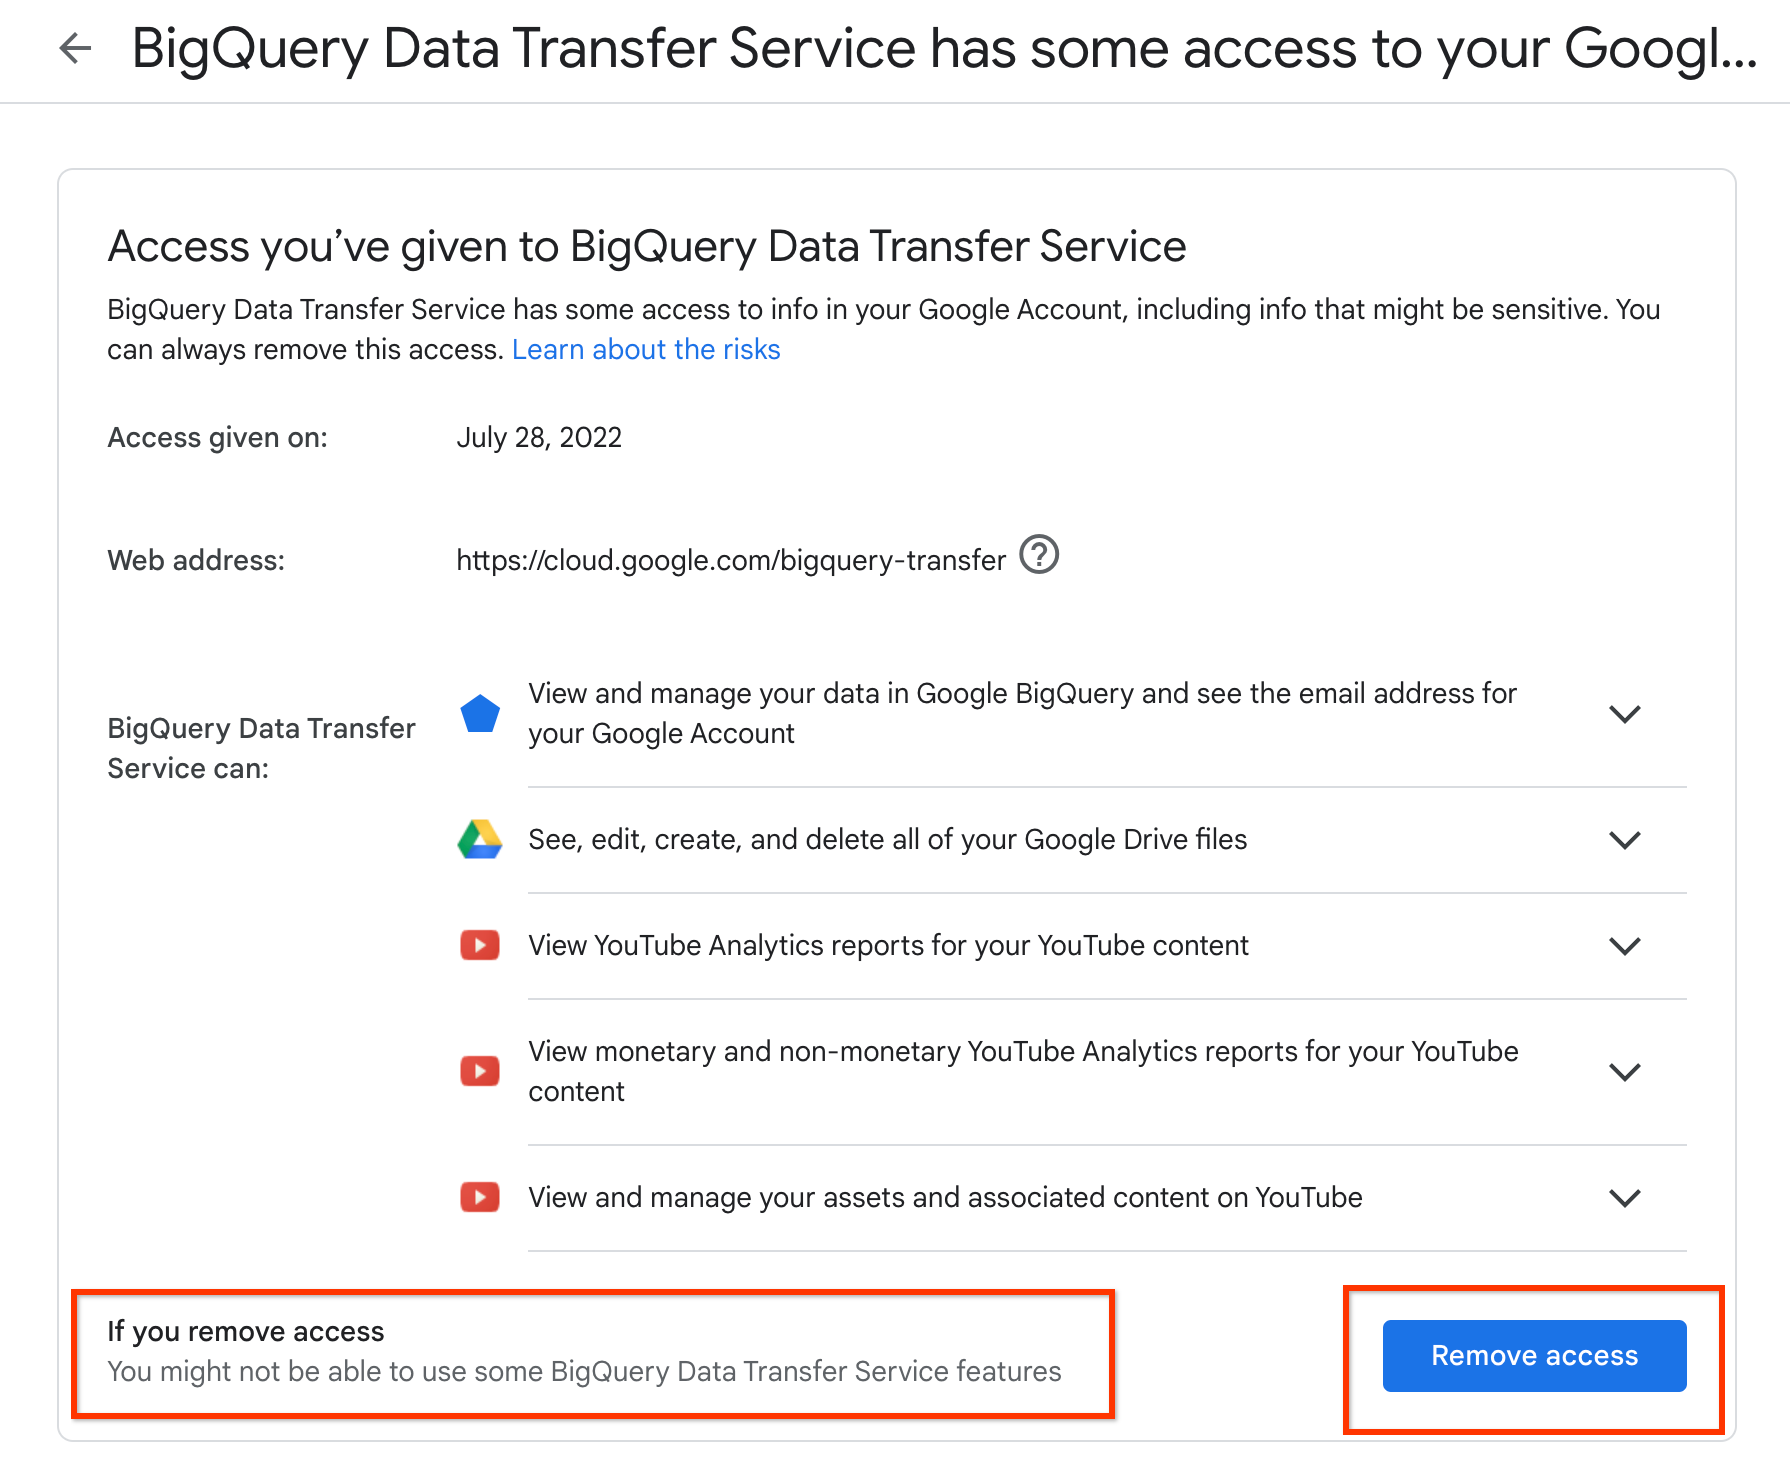 Quita el acceso que otorgaste al Servicio de transferencia de datos de BigQuery.